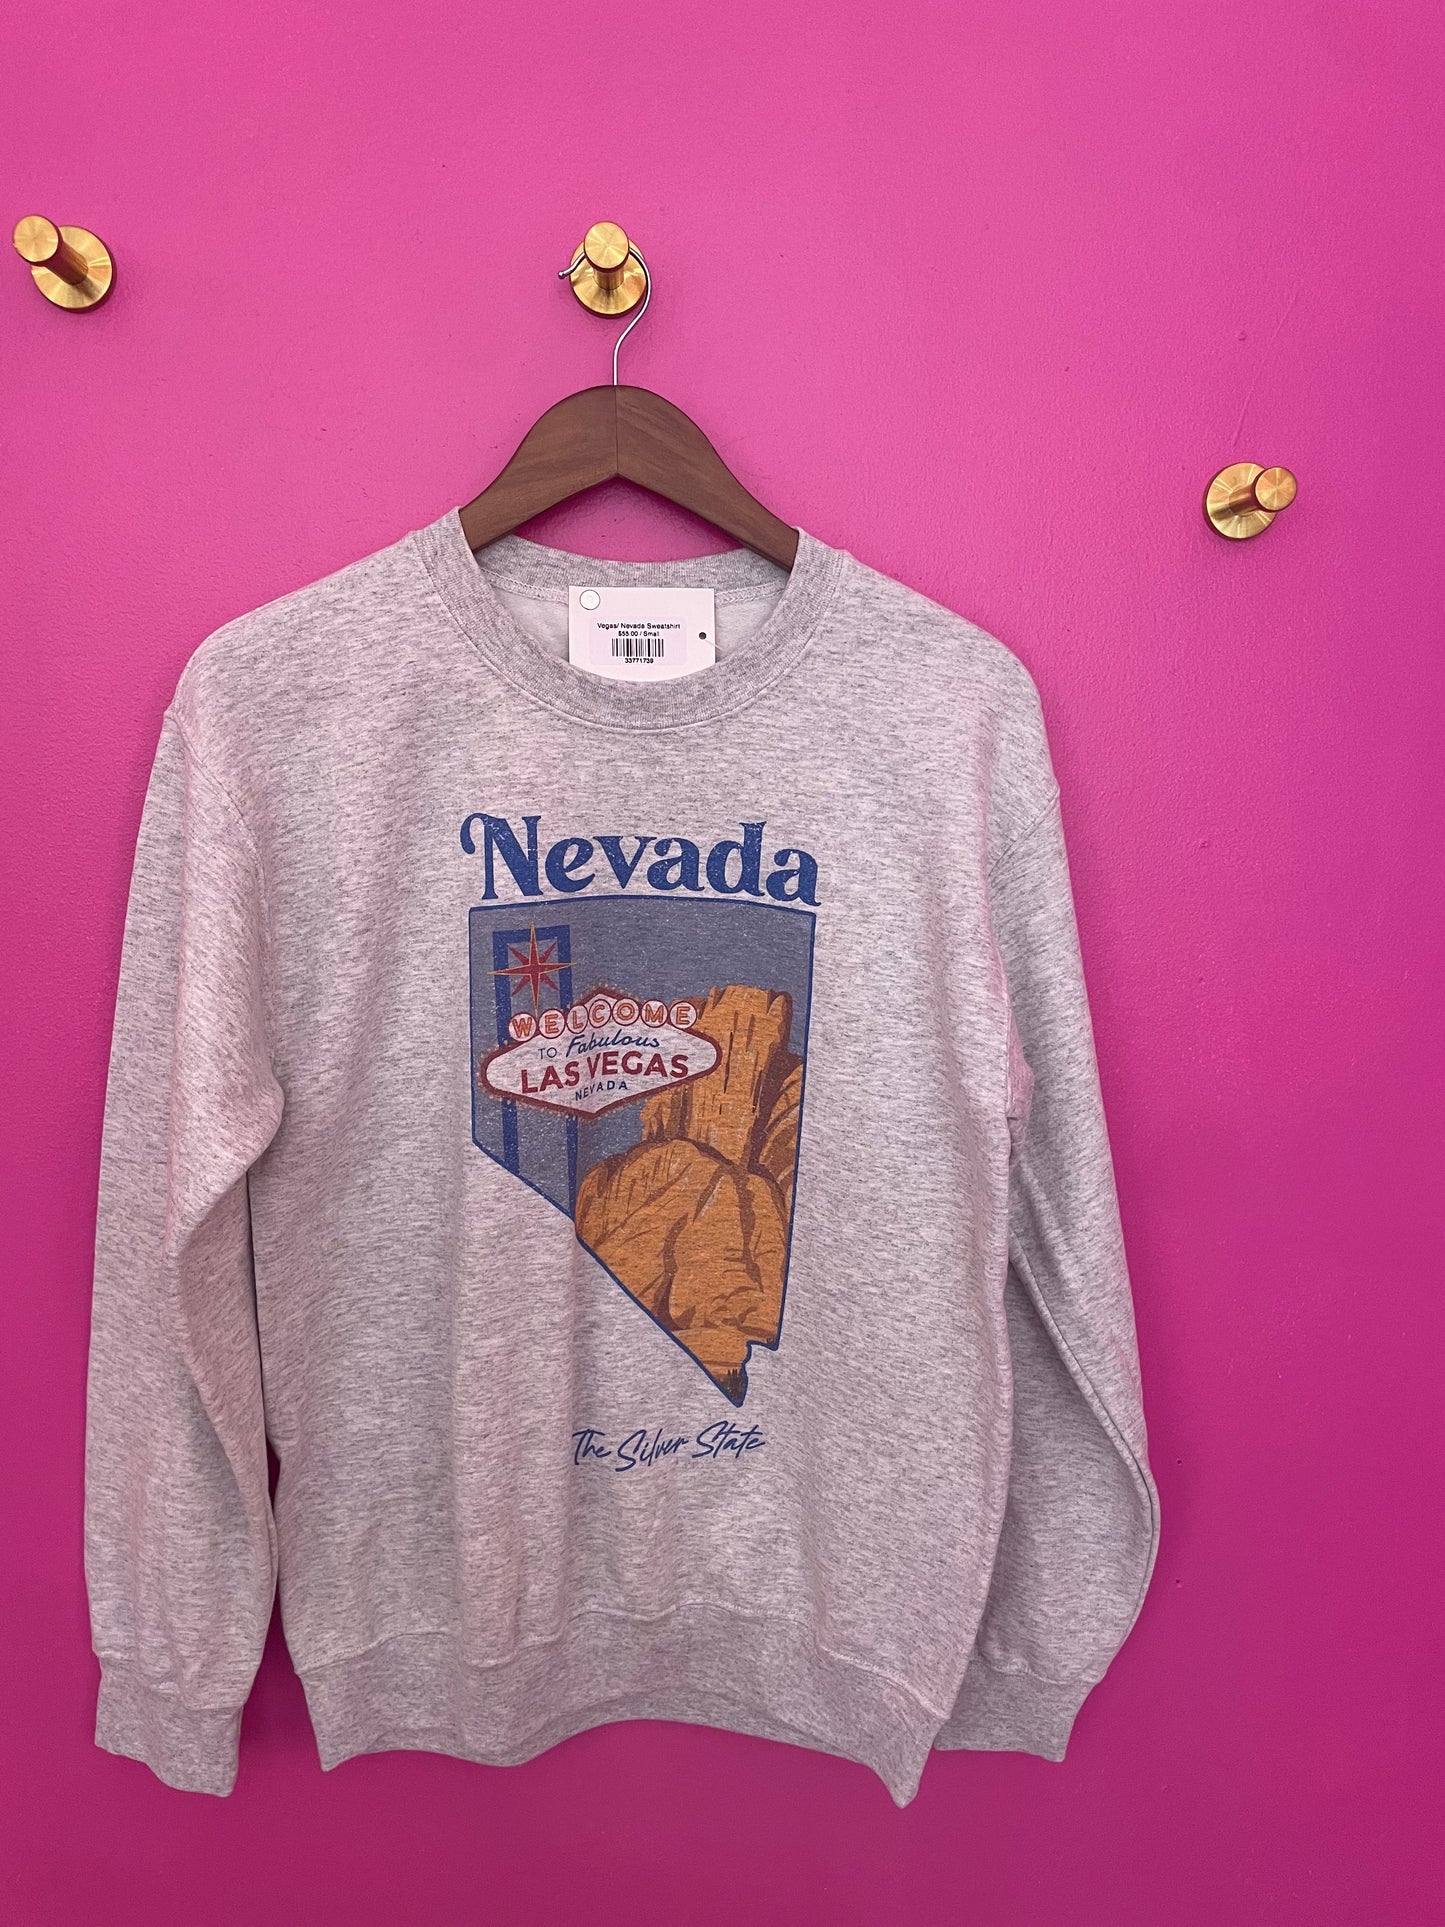 Vegas/ Nevada Sweatshirt